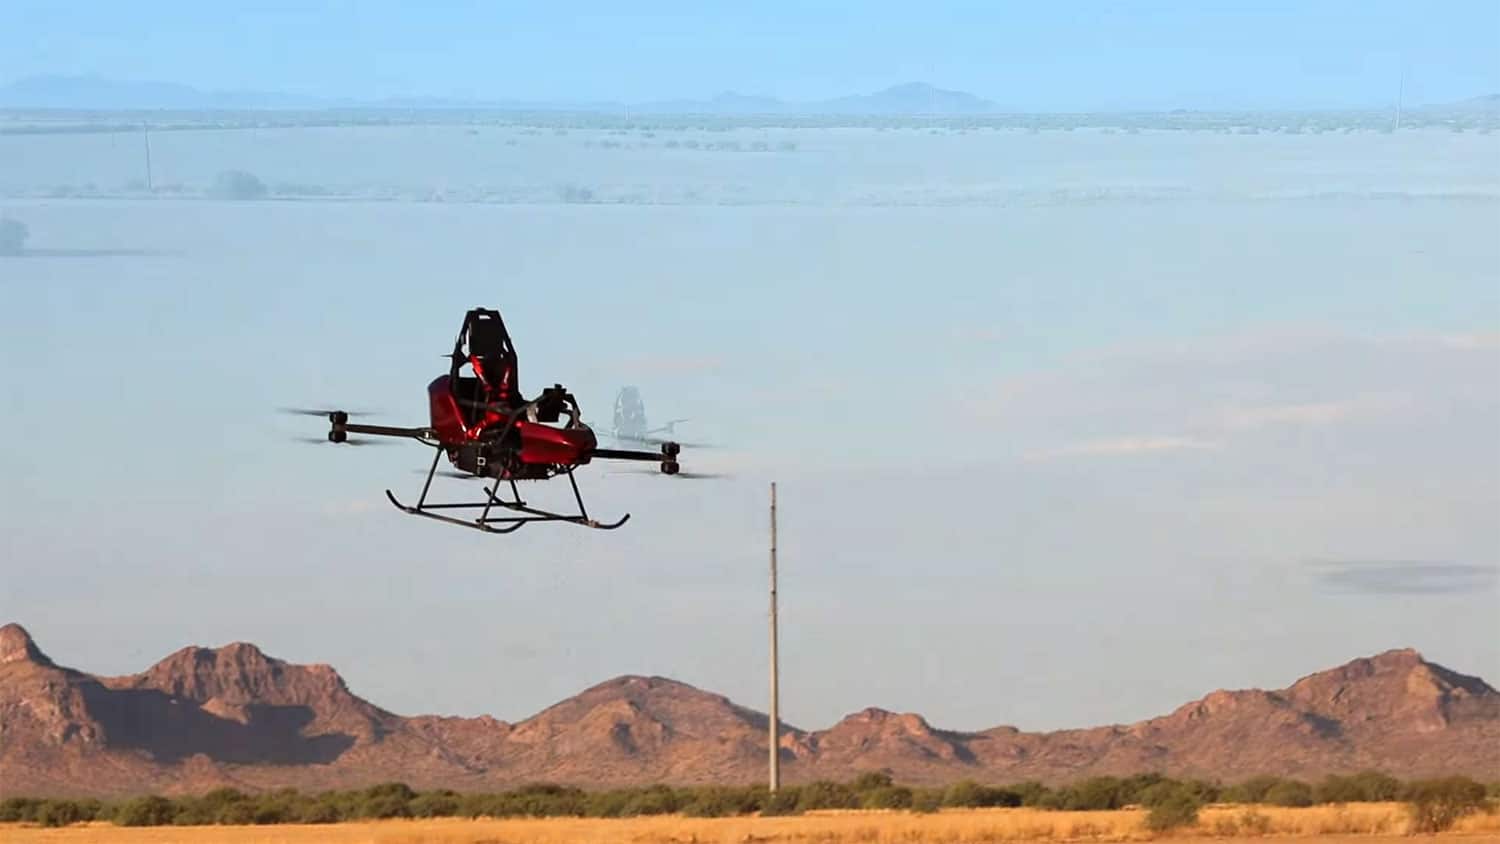 DRAGON ultralight eVTOL desert flight test.